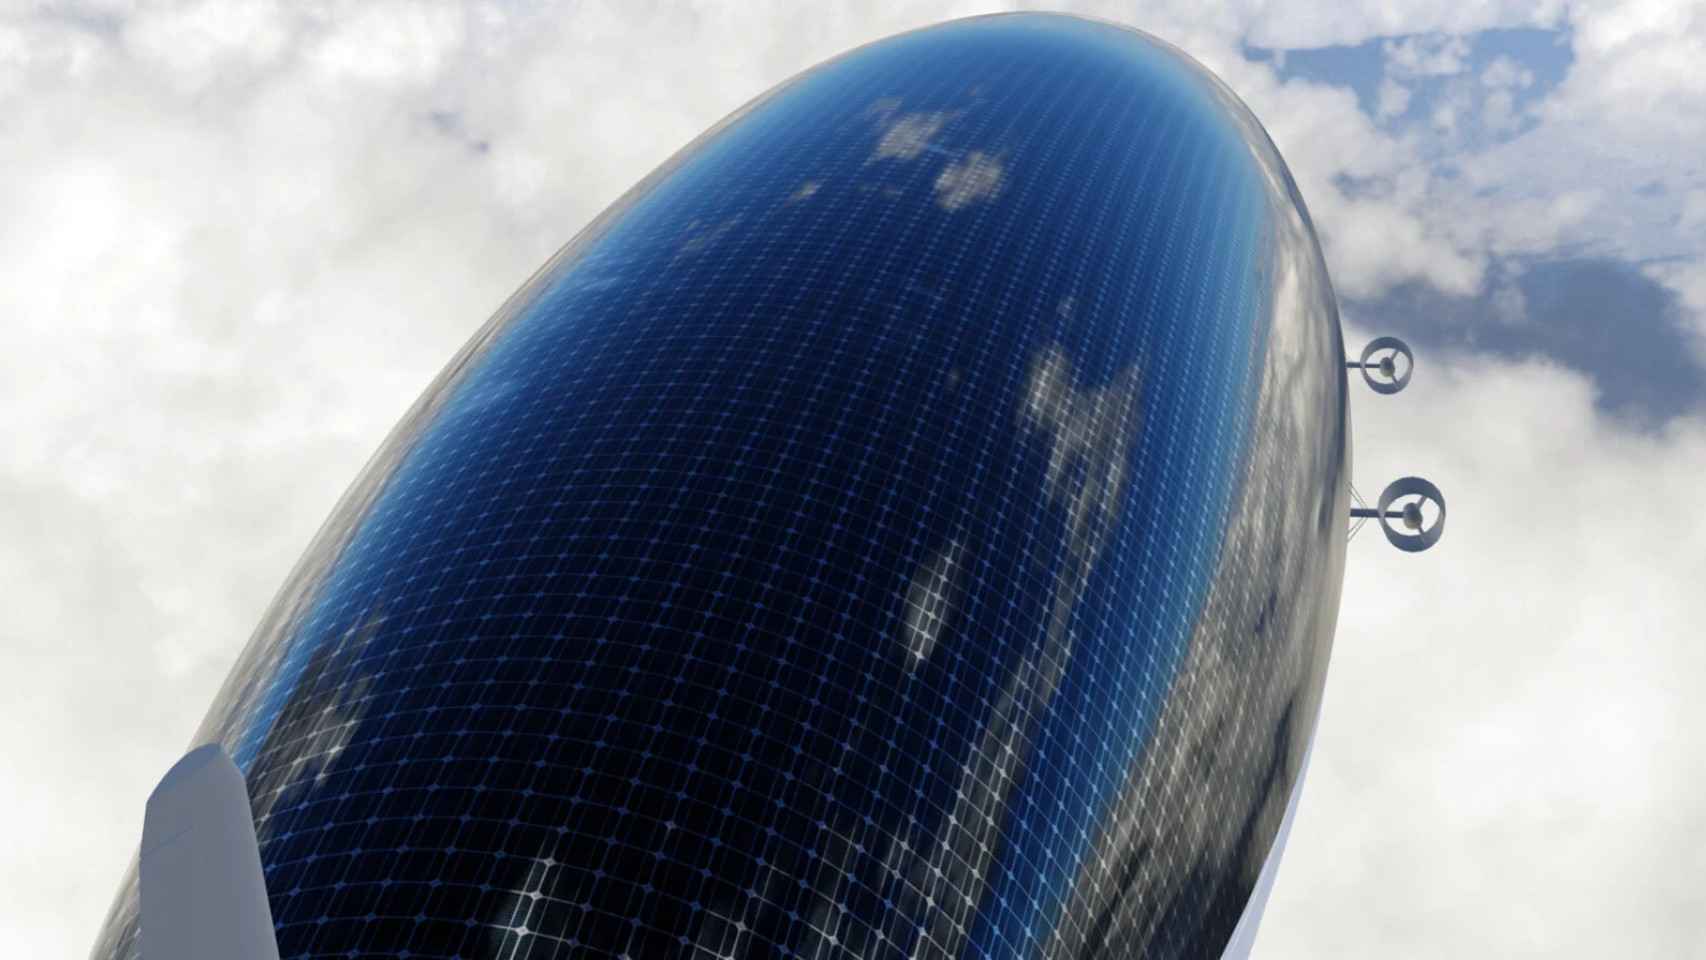 La parte superior del dirigible estará cubierta de paneles solares